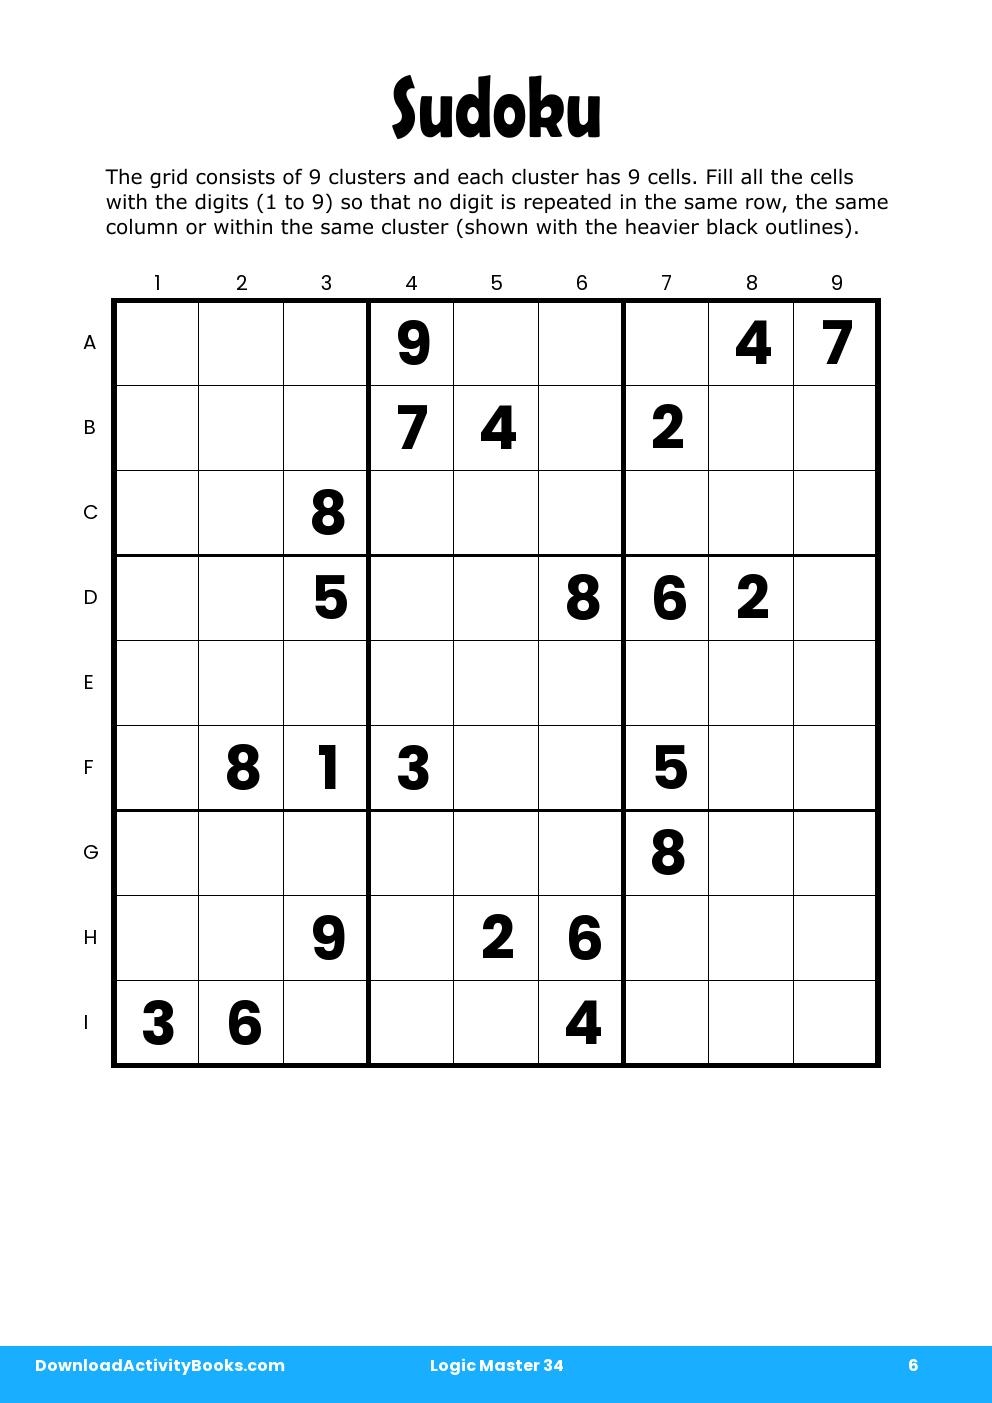 Sudoku in Logic Master 34